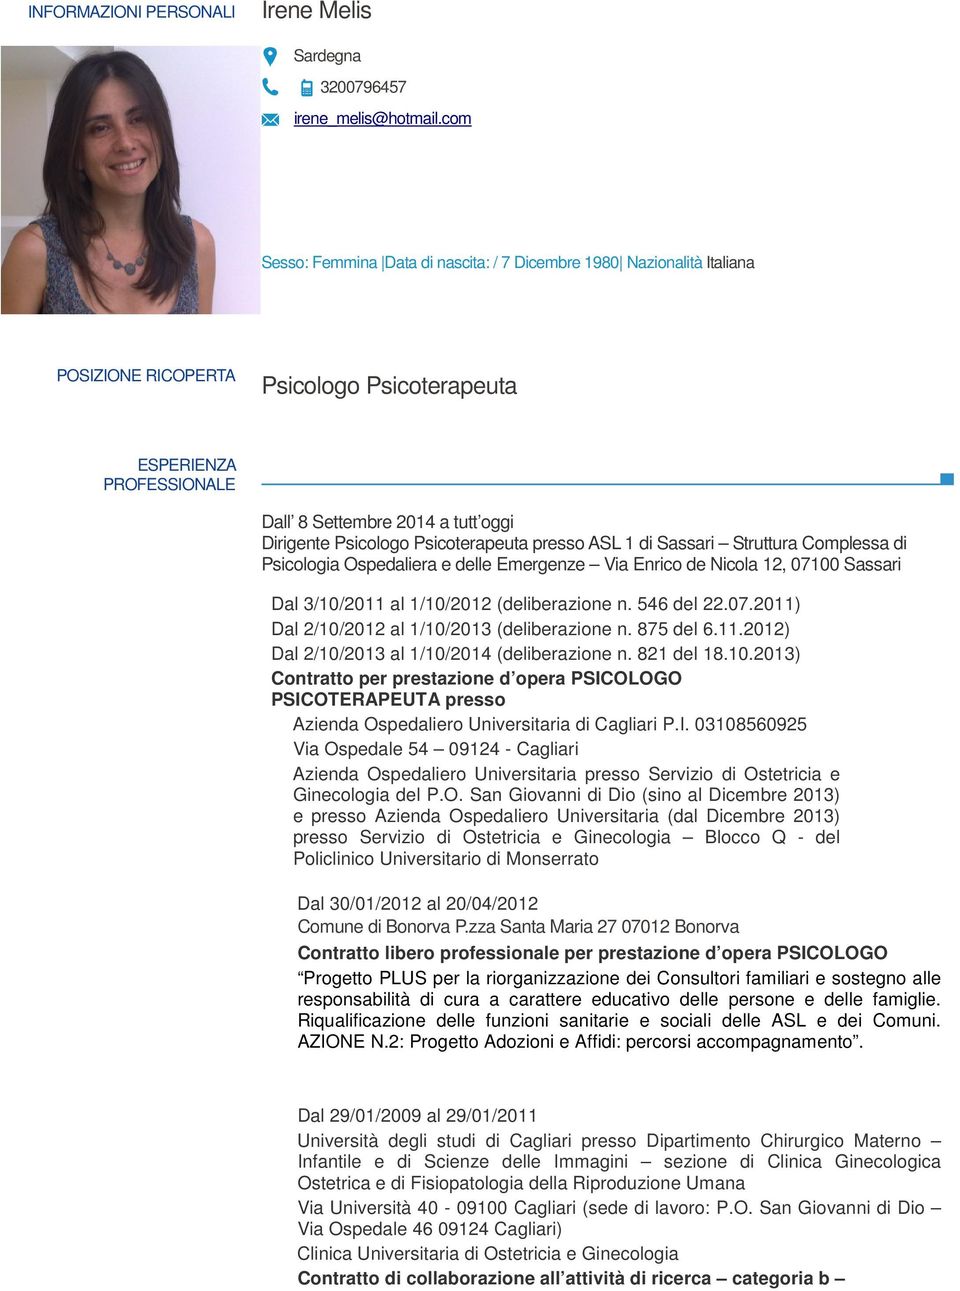 Psicoterapeuta presso ASL 1 di Sassari Struttura Complessa di Psicologia Ospedaliera e delle Emergenze Via Enrico de Nicola 12, 07100 Sassari Dal 3/10/2011 al 1/10/2012 (deliberazione n. 546 del 22.